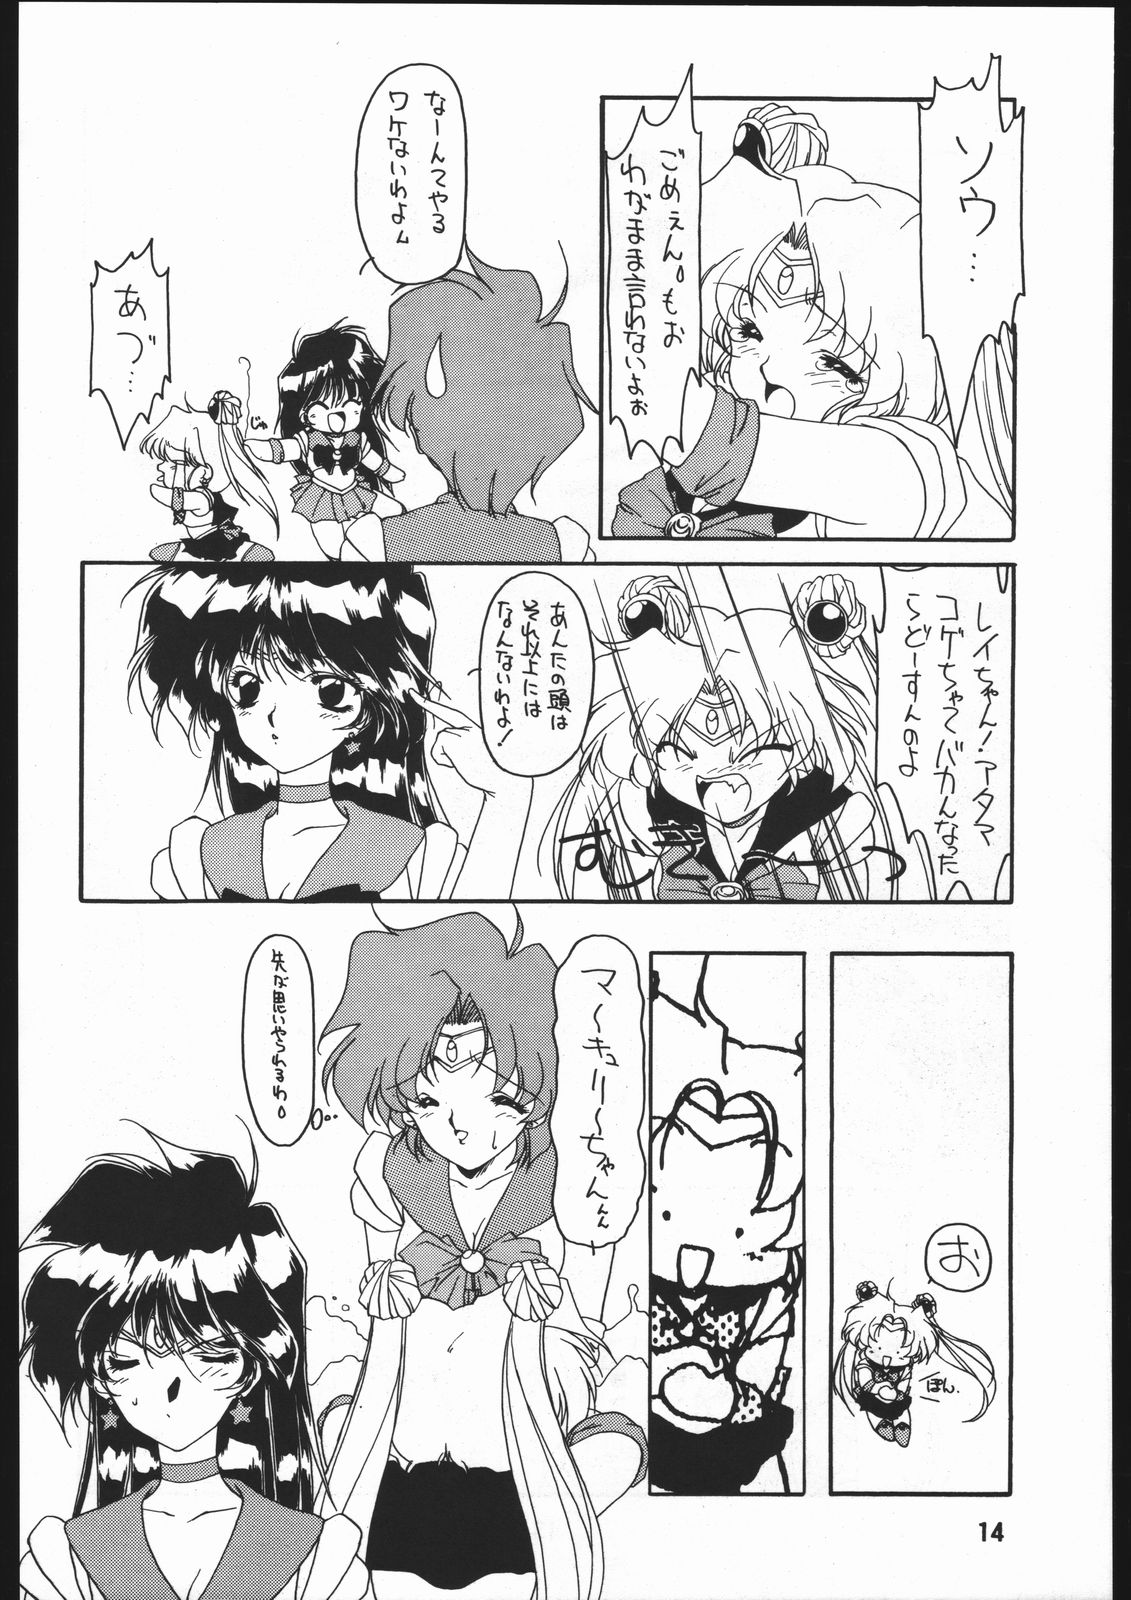 [Sailor Moon] Seirei Yakyoku Jyoukan Rosenfeld 4 (Chimeishou) page 15 full